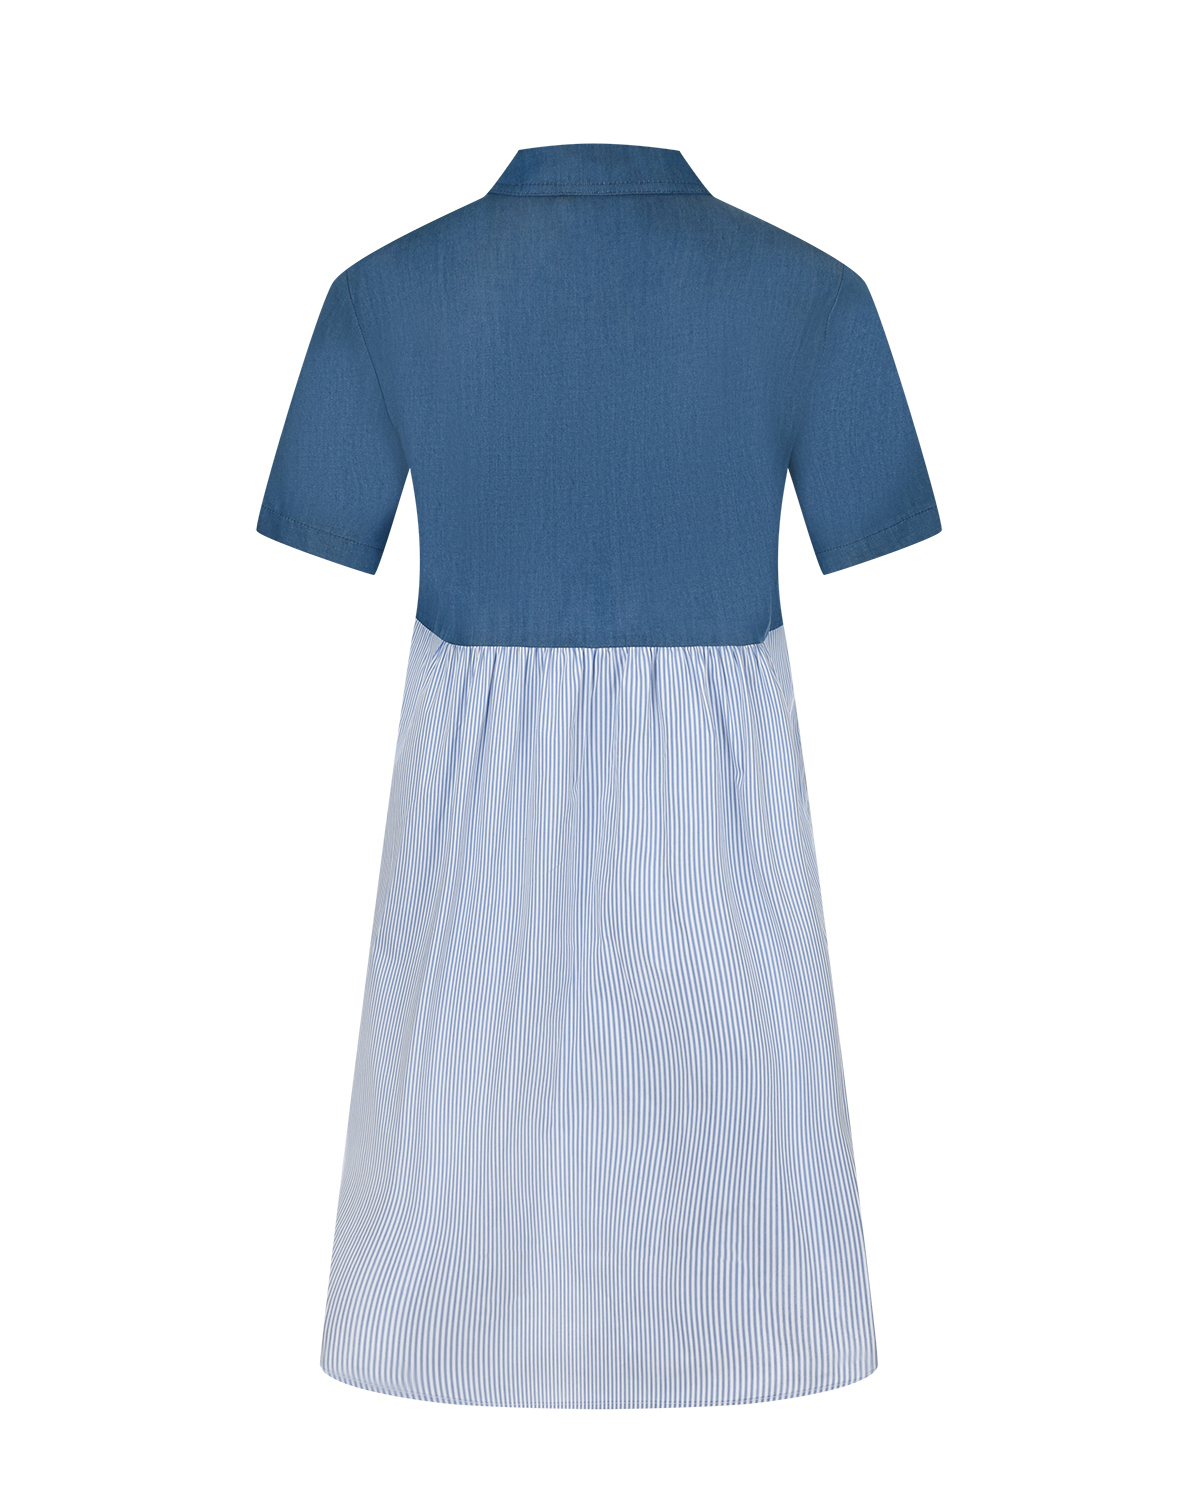 Синее платье с короткими рукавами Attesa, размер 38, цвет синий - фото 5